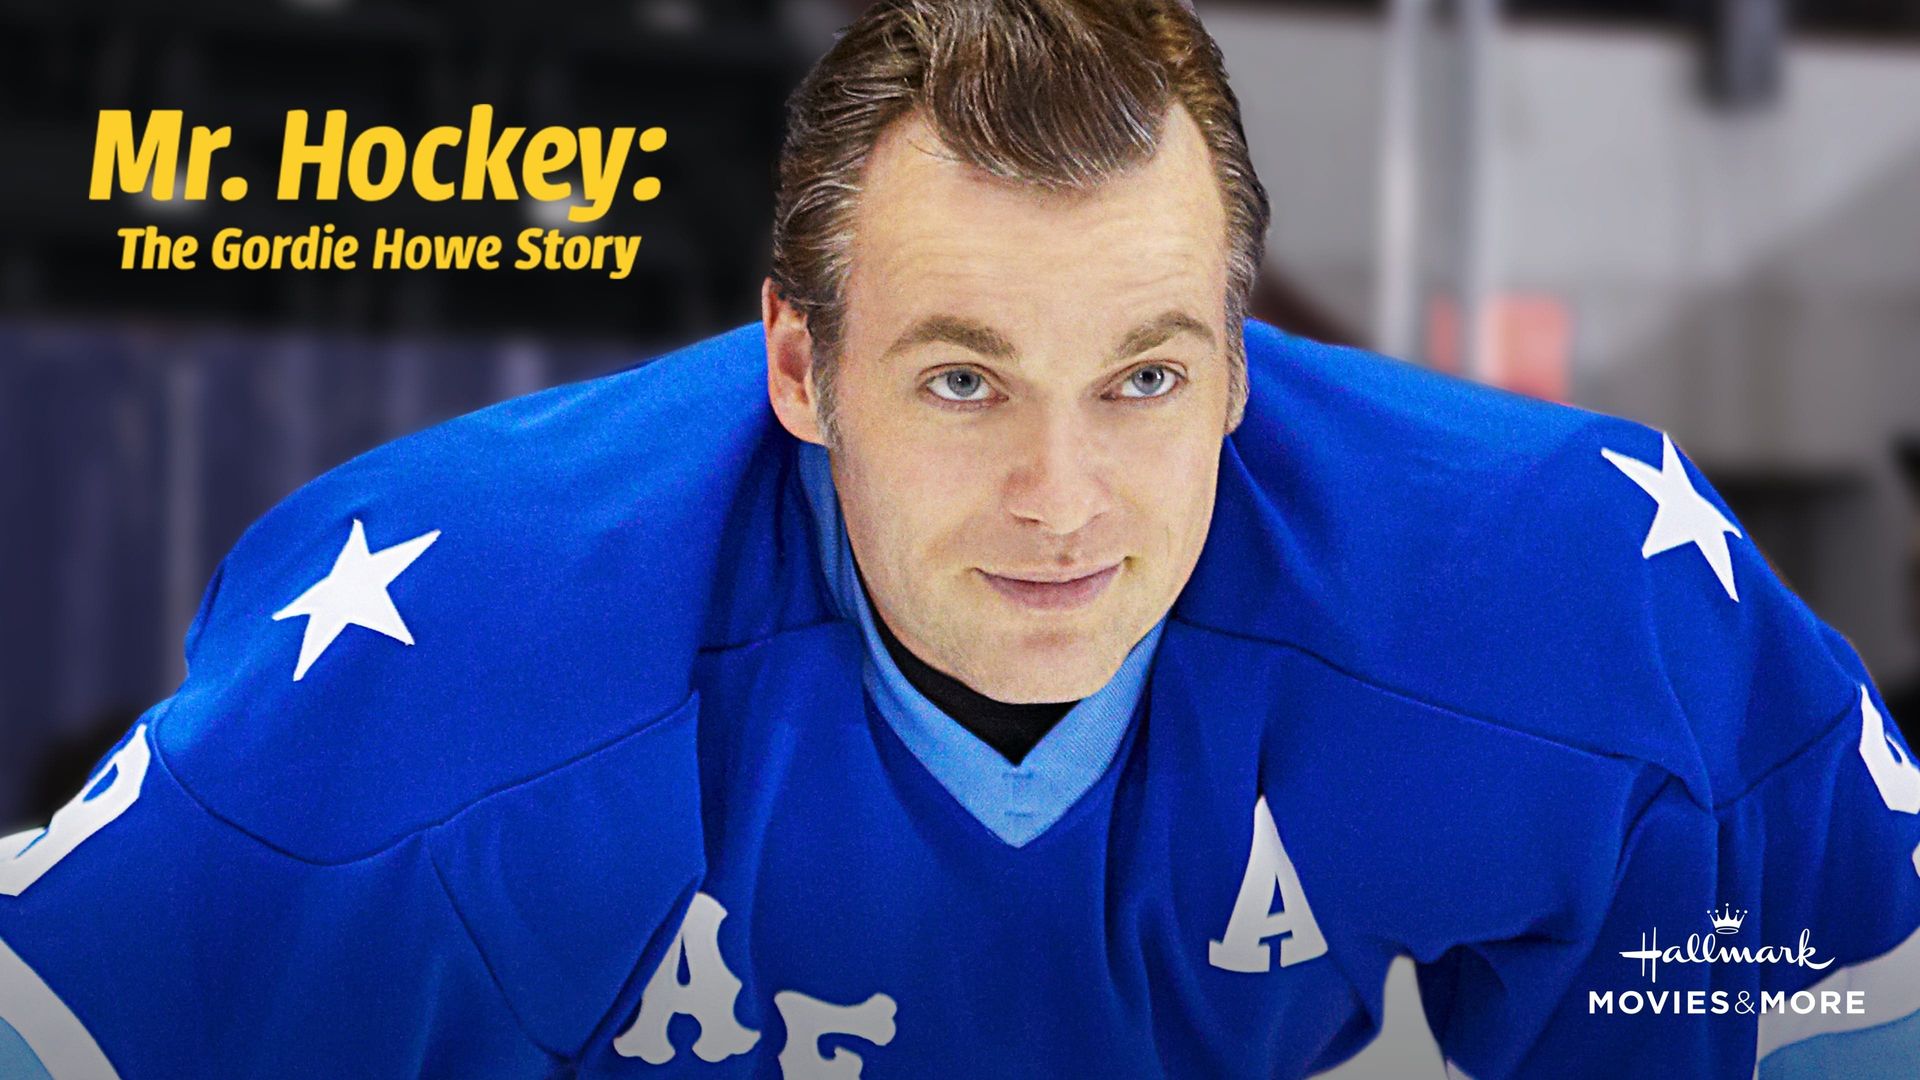 Mr. Hockey: The Gordie Howe Story background